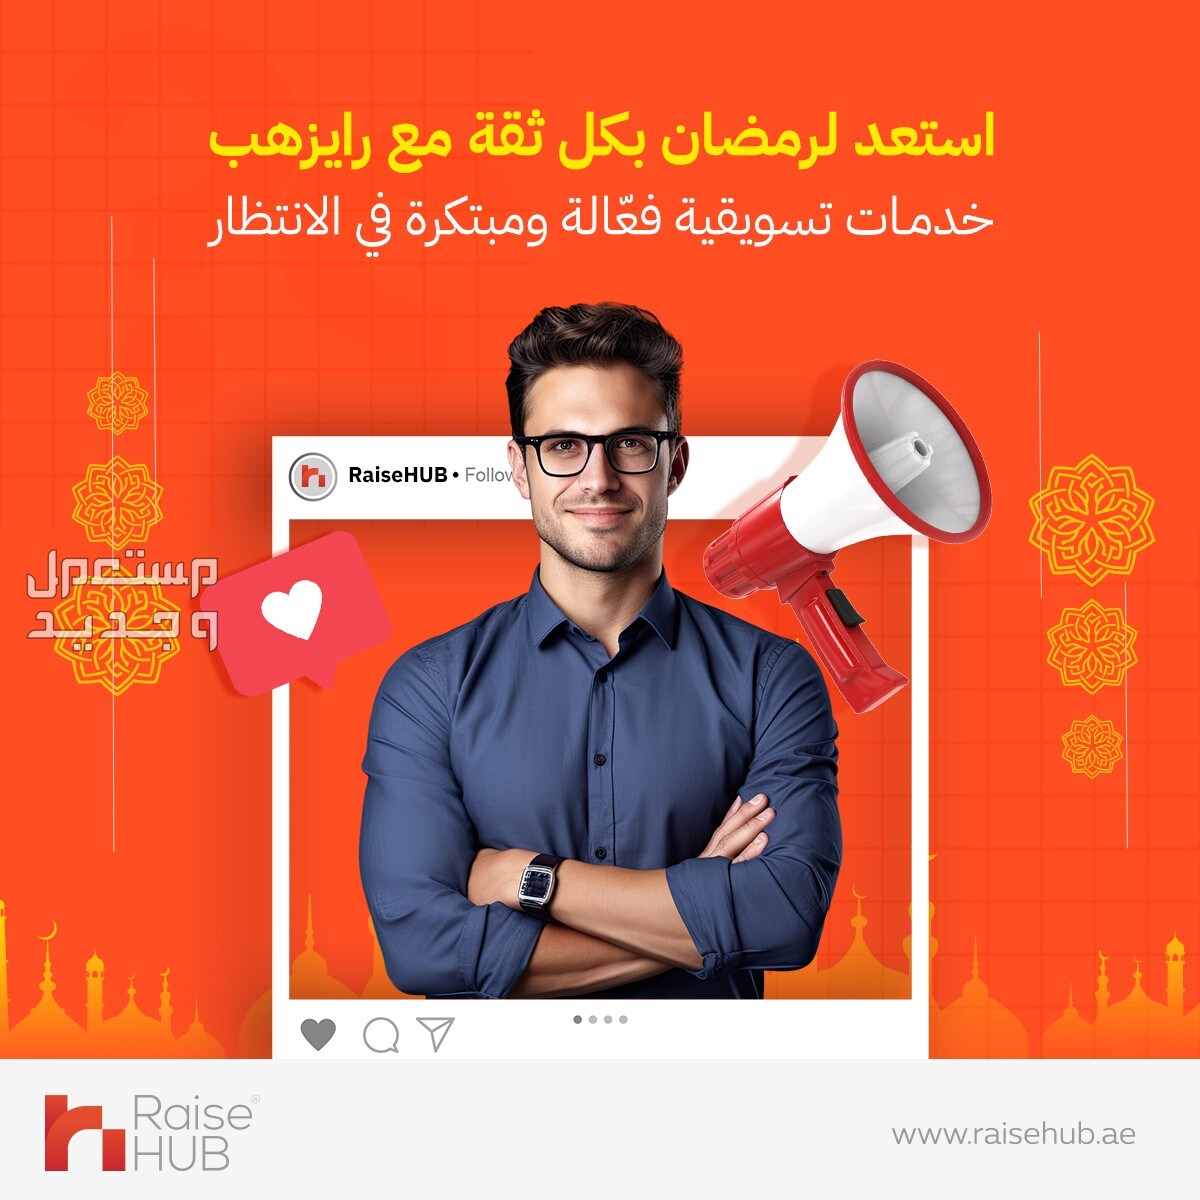 خلال شهر رمضان، يمكنك الاعتماد على RiseHub لتقديم خدمات تسويقية فعالة ومبتكرة. في الرياض بسعر 99 ريال سعودي